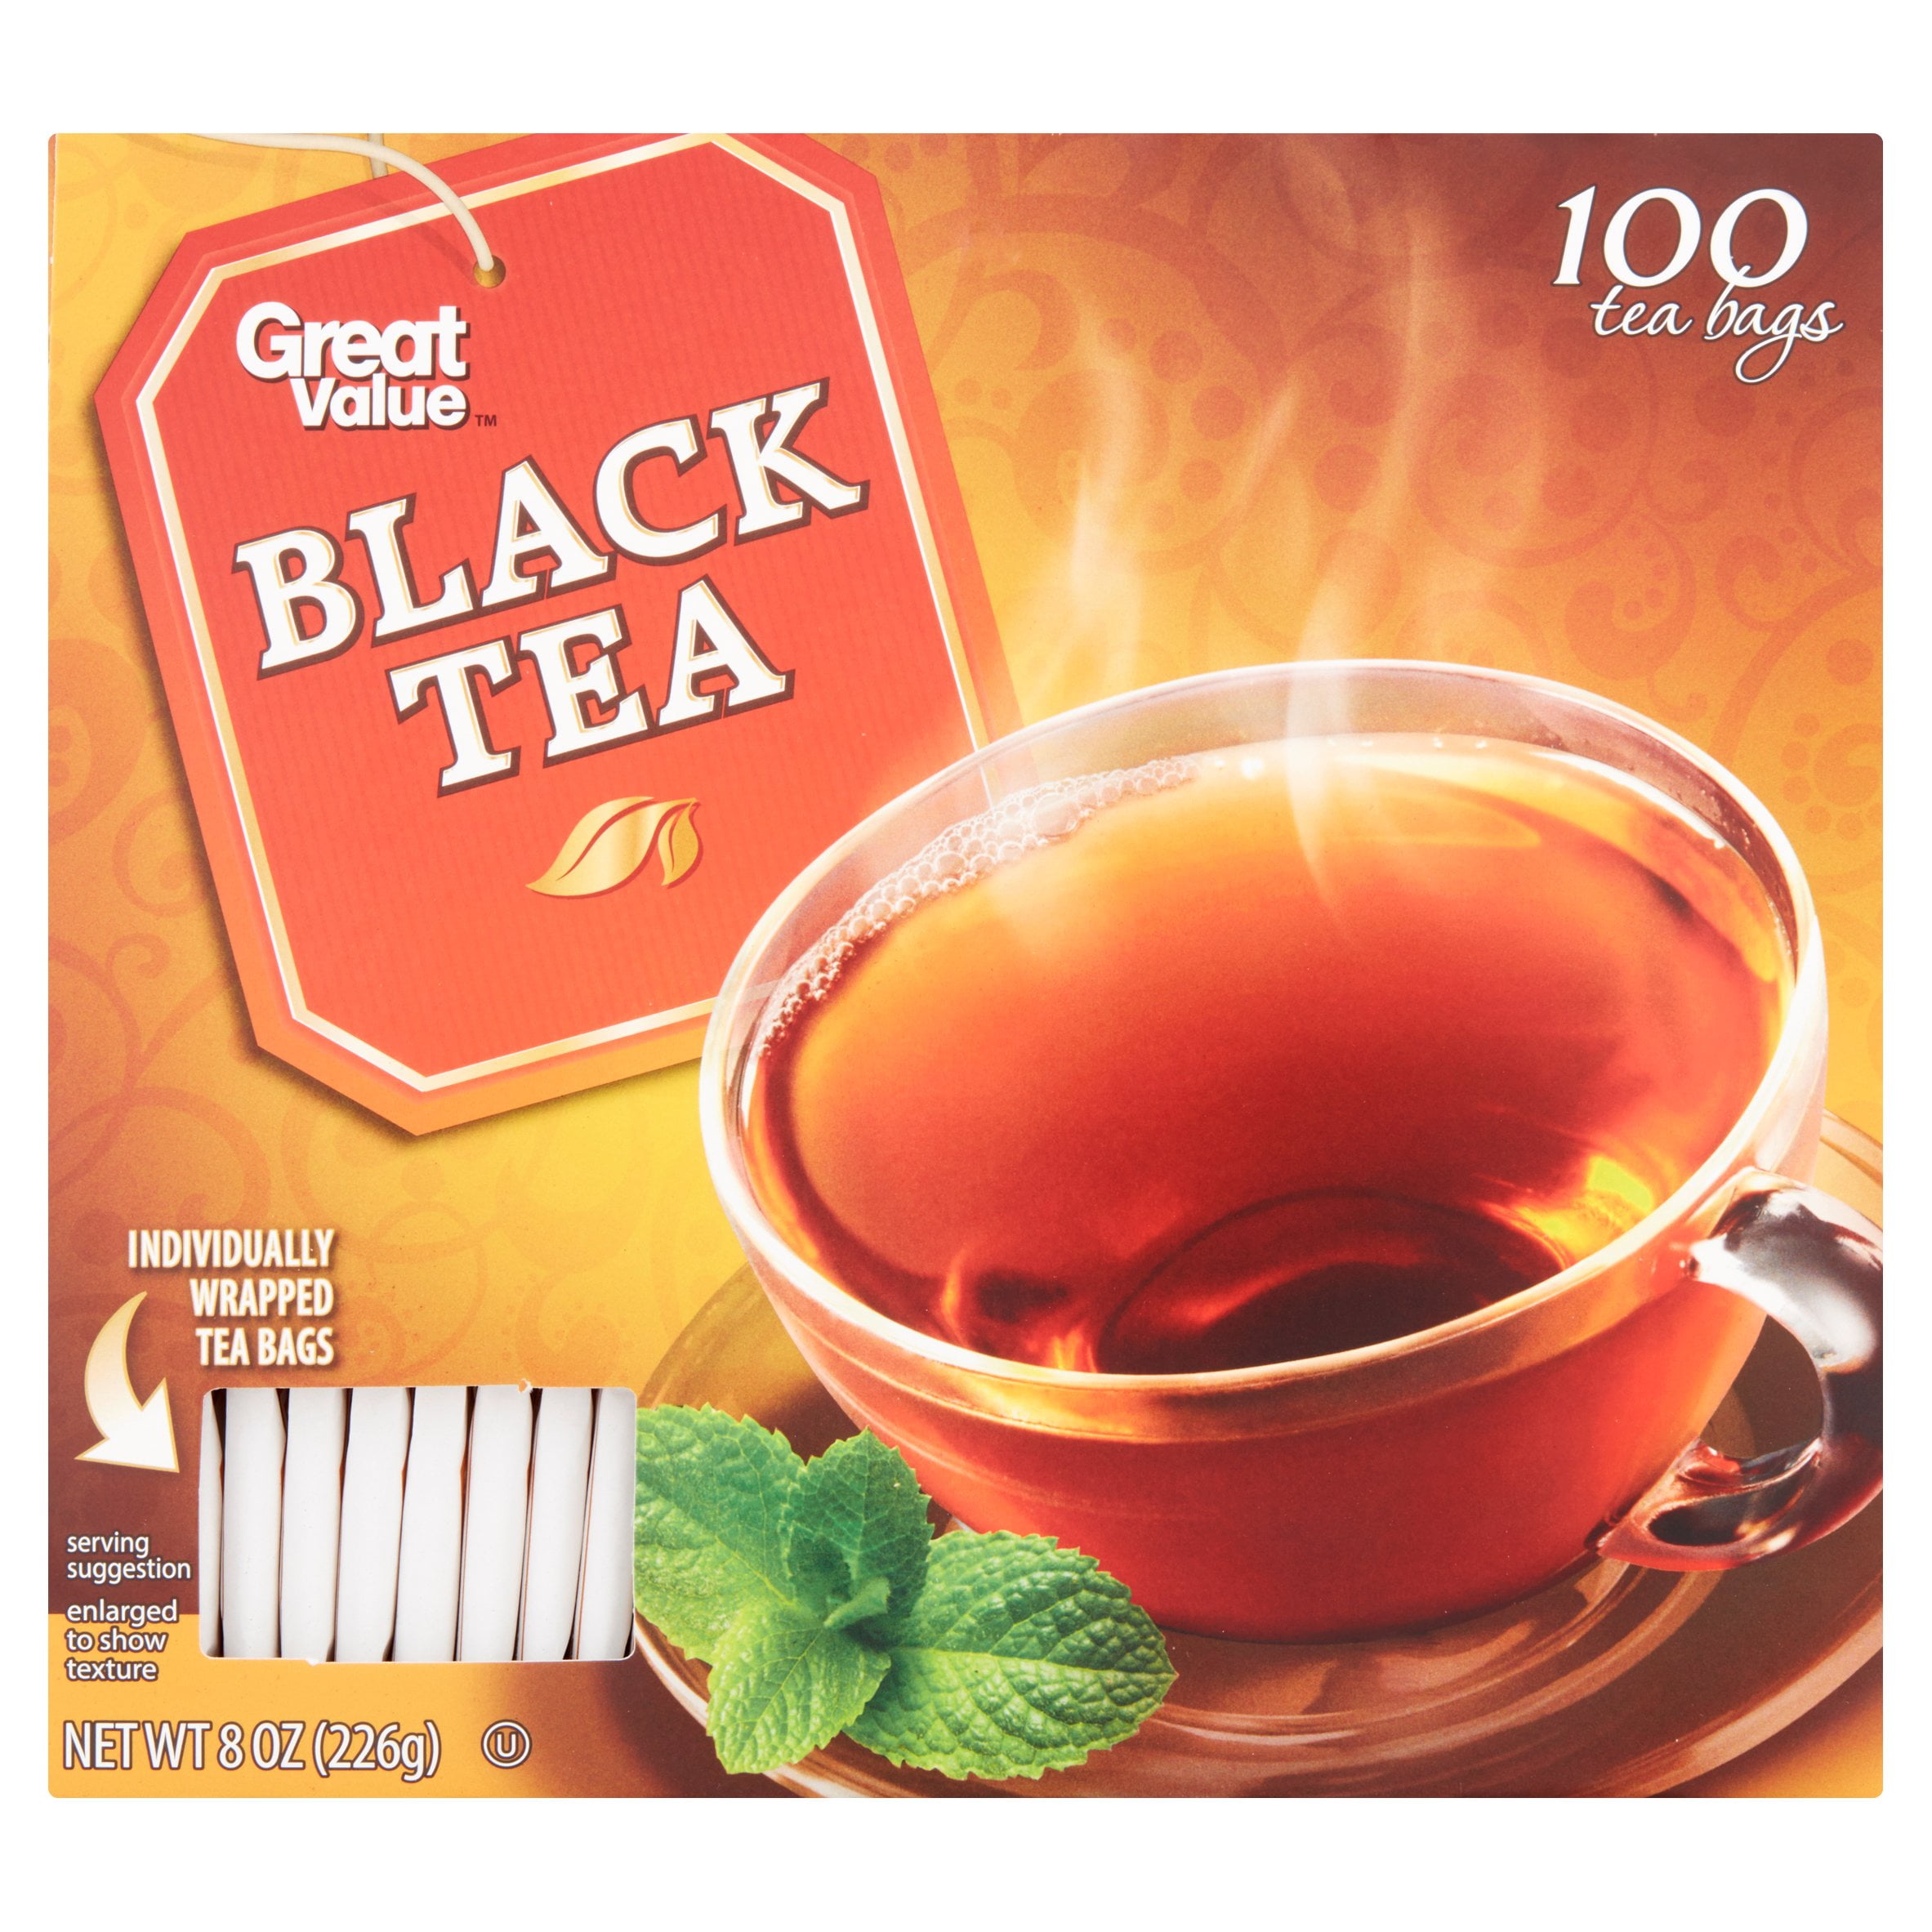 (5 pack) (Pack of 5) Great Value Black Tea, Tea Bags, 100 Ct